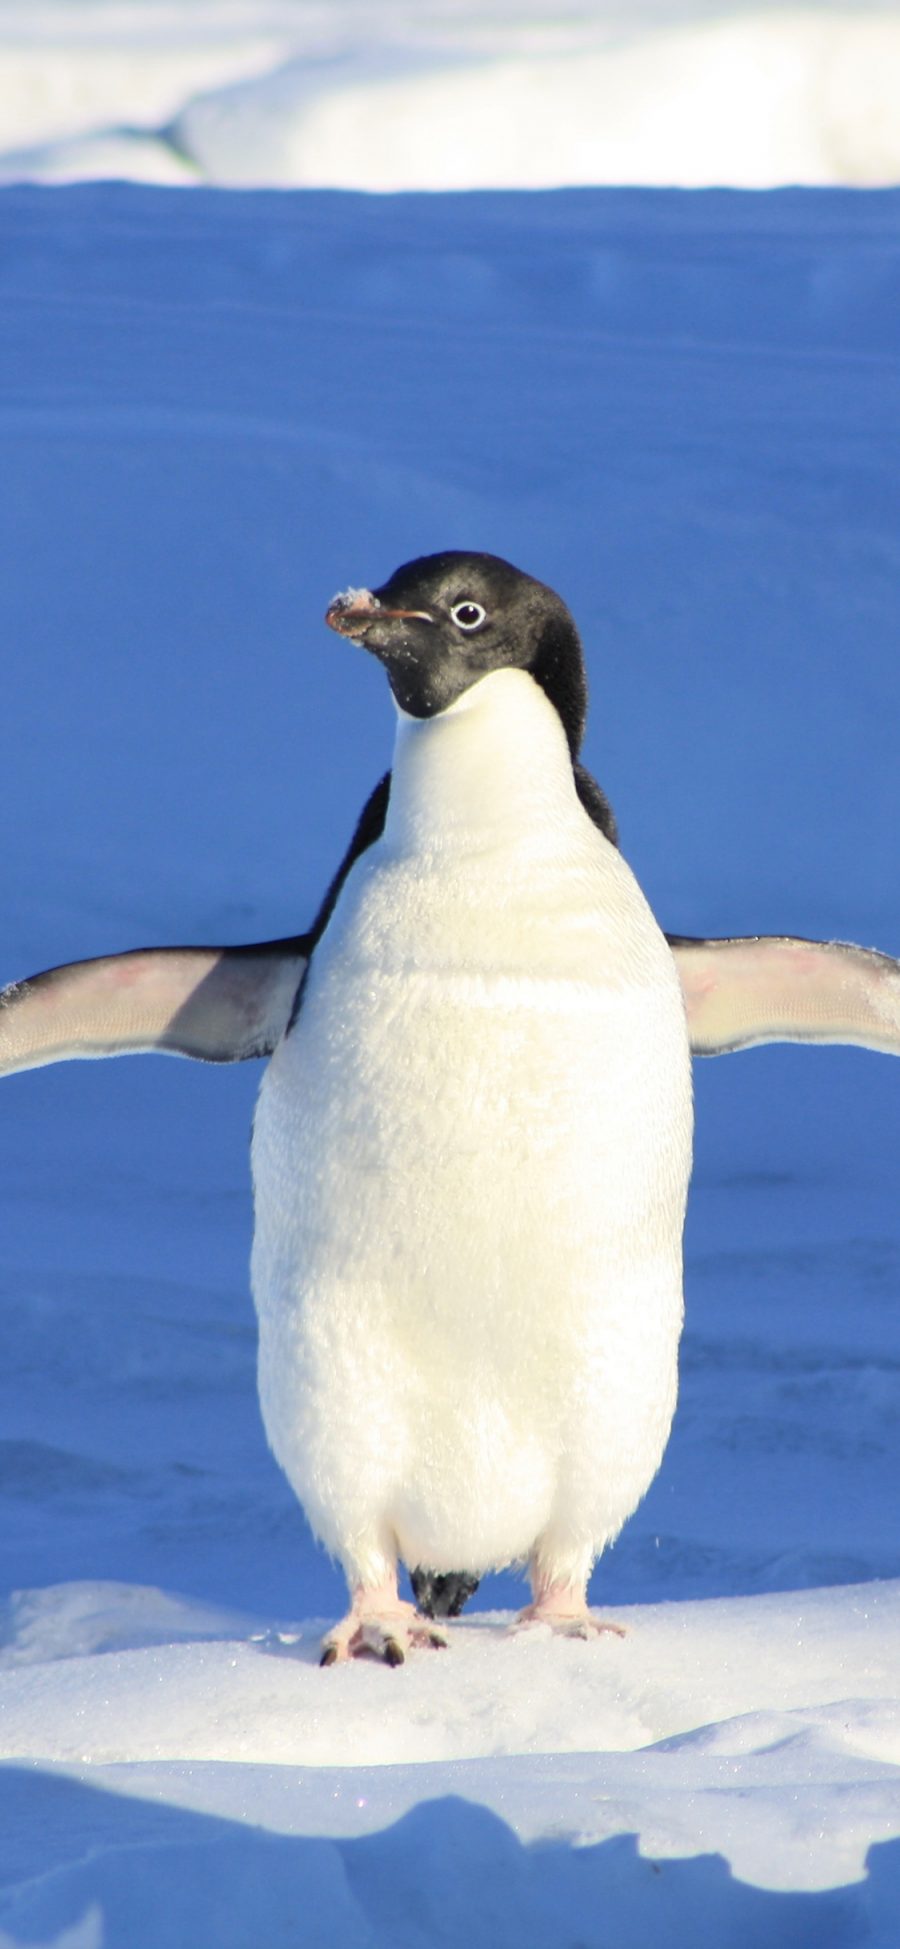 [2436×1125]企鹅 南极 冰块 寒冷 苹果手机壁纸图片